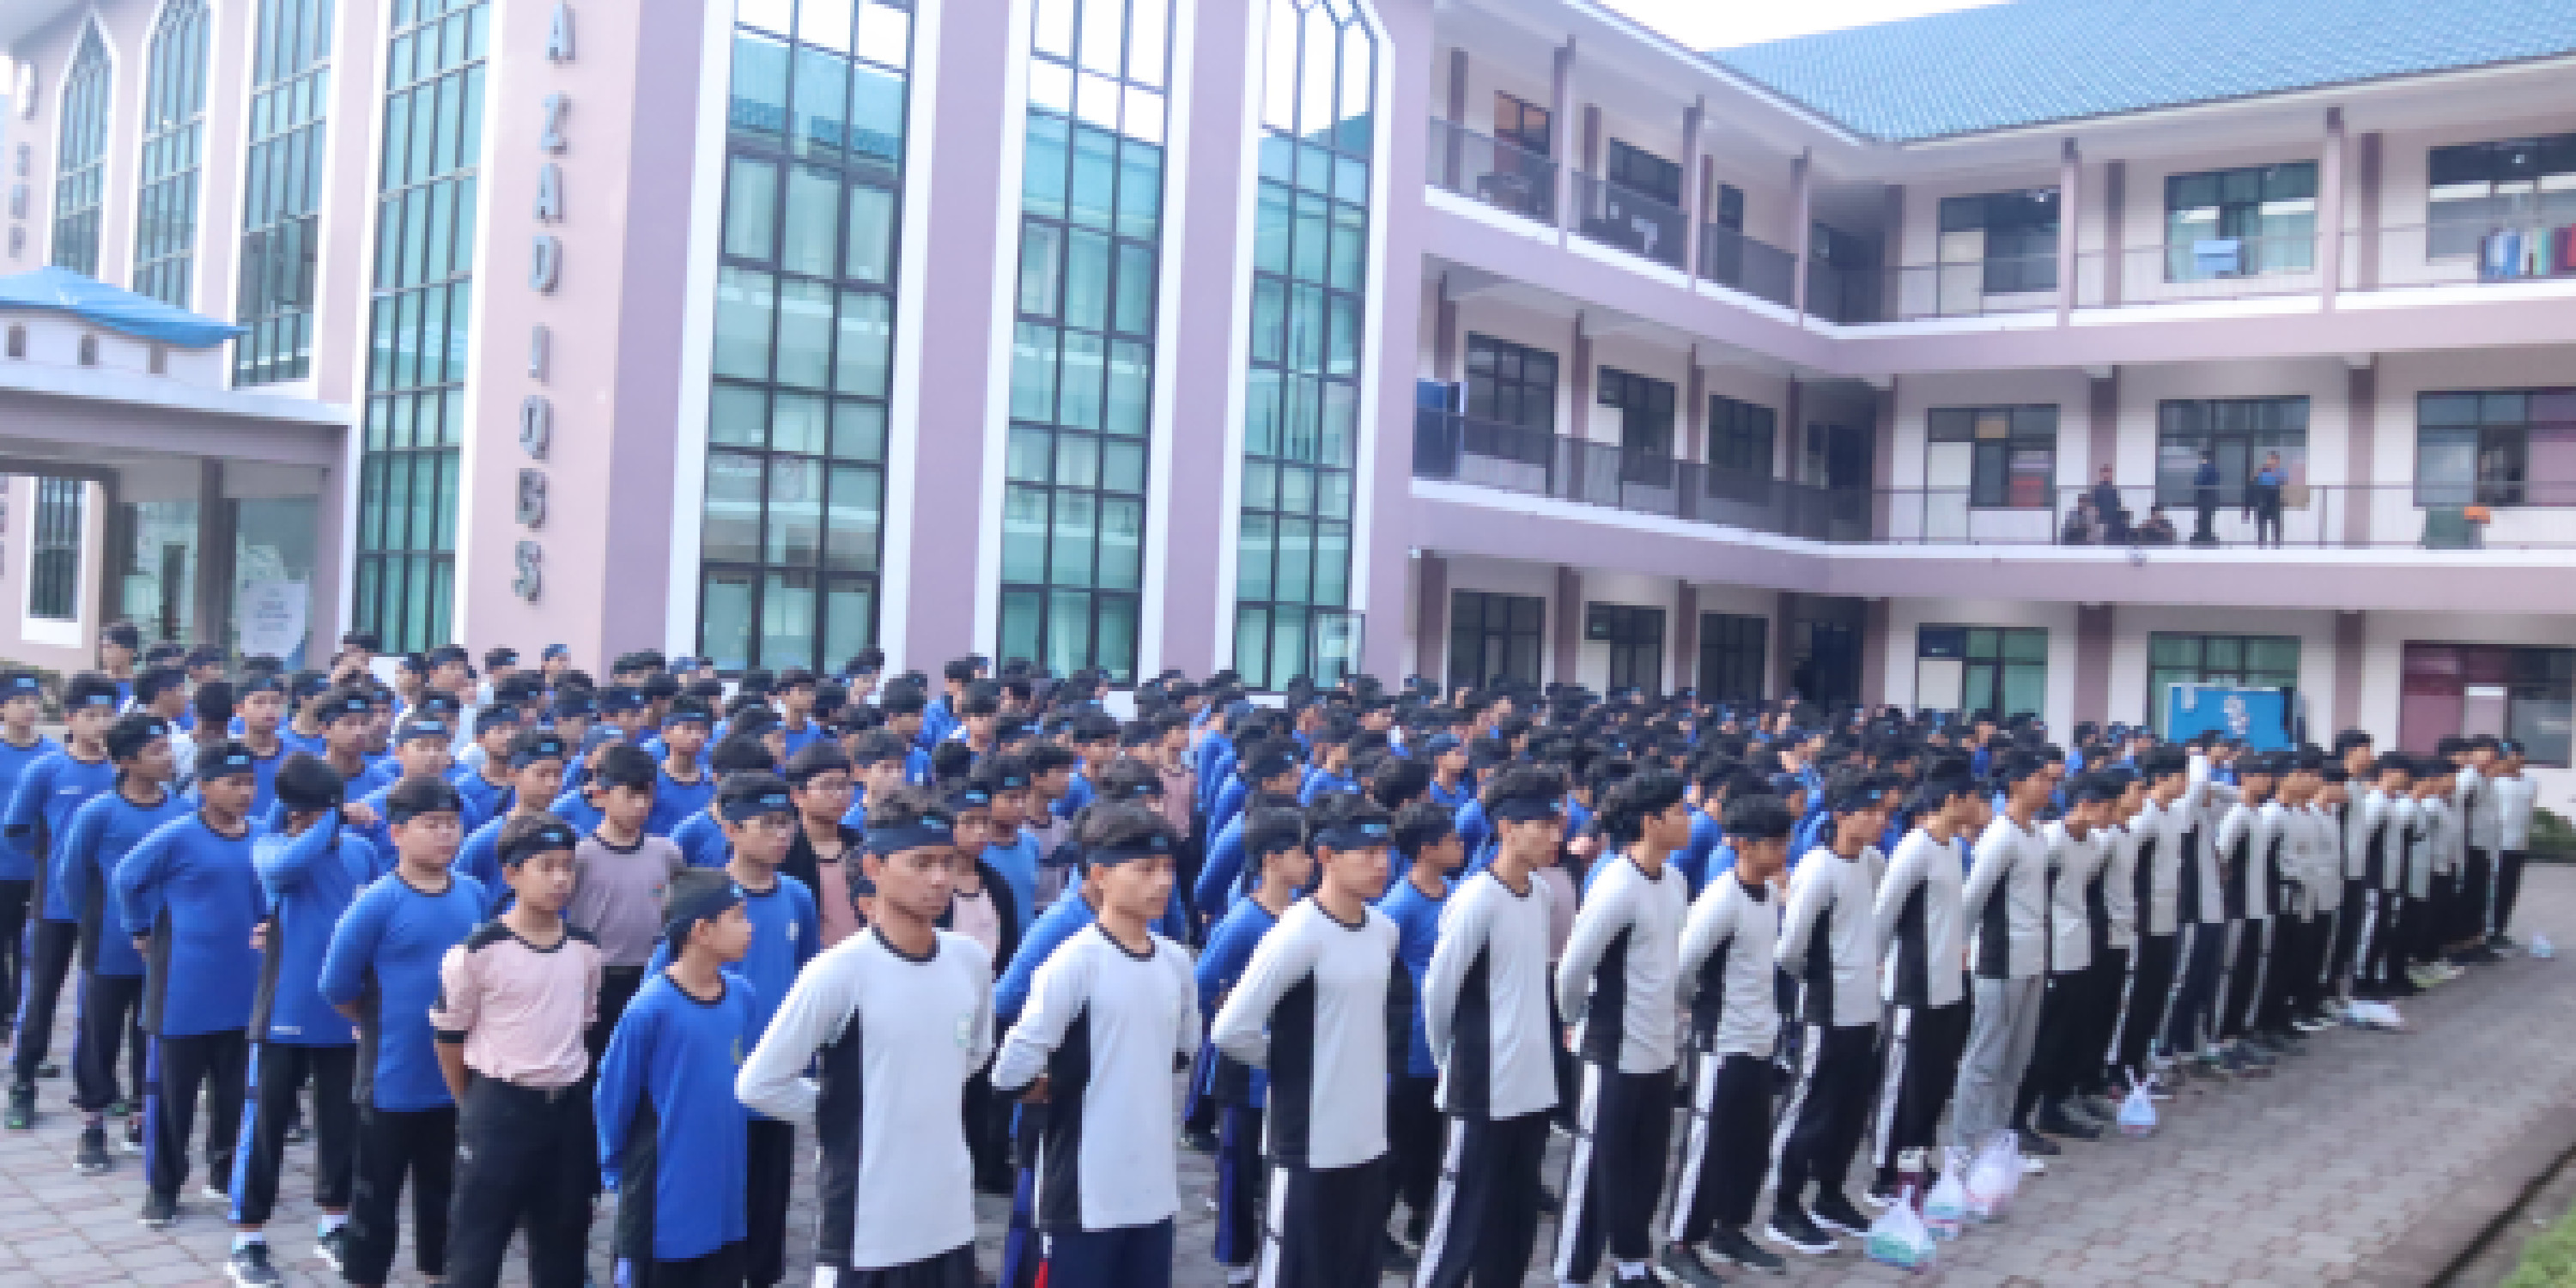 Foto Kegiatan Siswa SMA ZAD International Quranic Boarding School Mengadakan Kegiatan Mukhoyyam Tarbawiy di Daerah Sarongge: Anggota Danramil Desa Cugenang Memberikan Materi dan Pelatihan Kepemimpinan